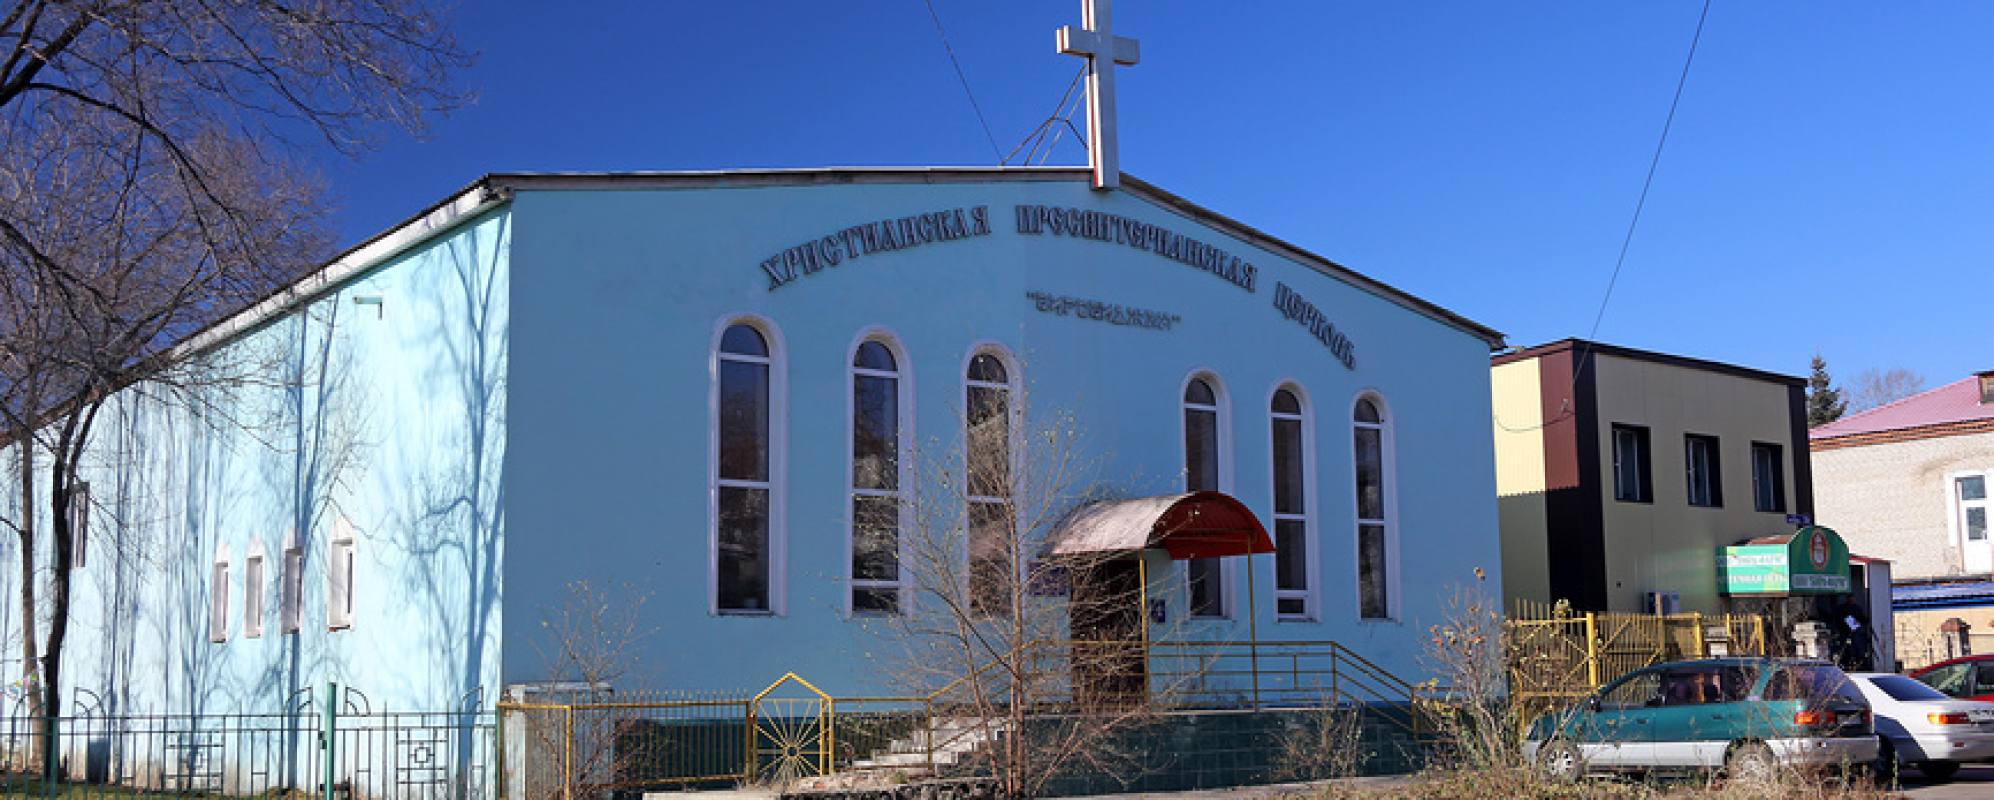 Фотографии храма Христианская пресвитерианская церковь